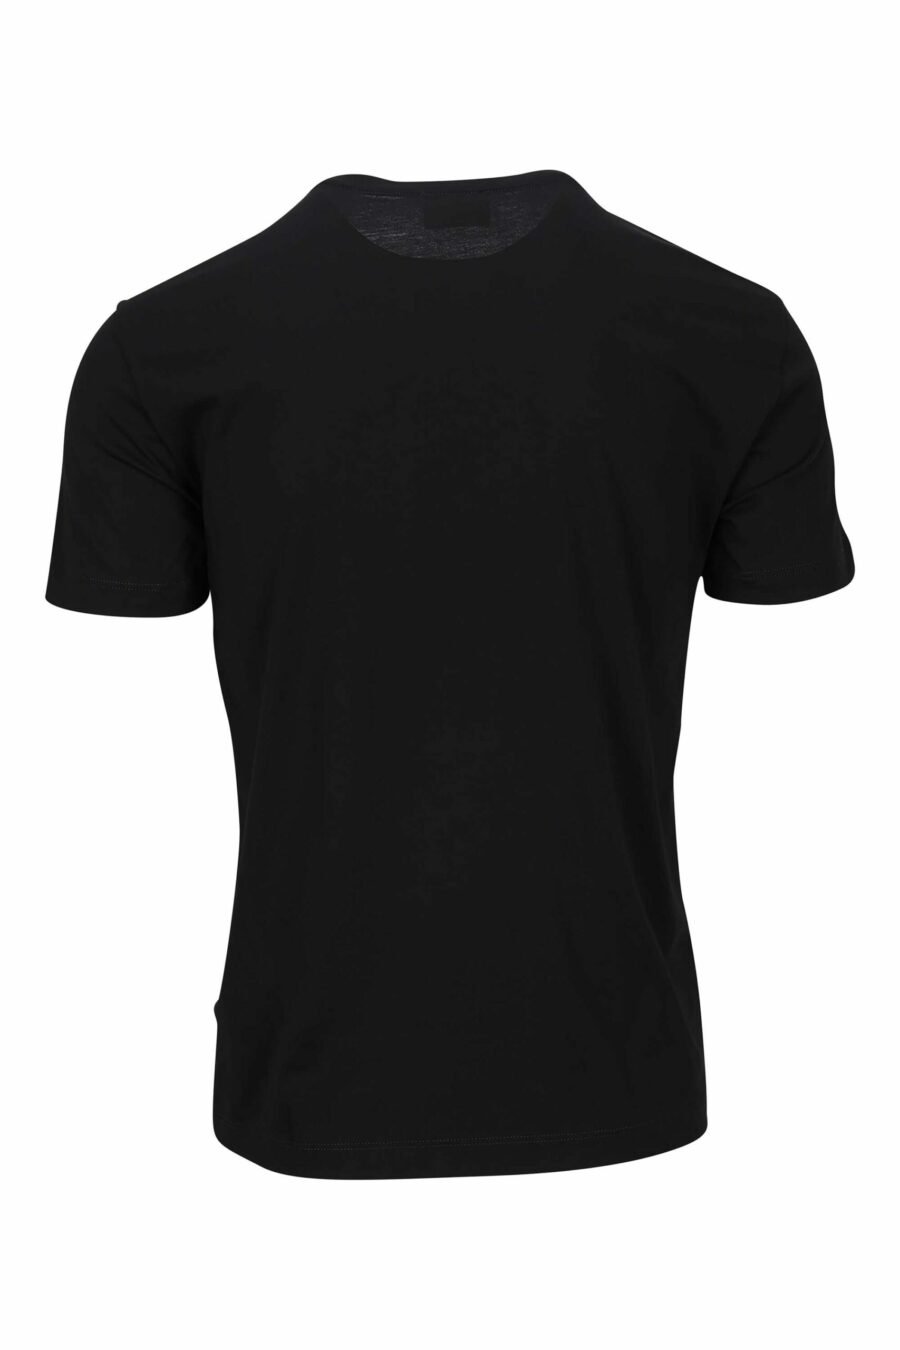 T-shirt noir avec maxilogo doré "lux identity" - 8056787951167 1 scaled